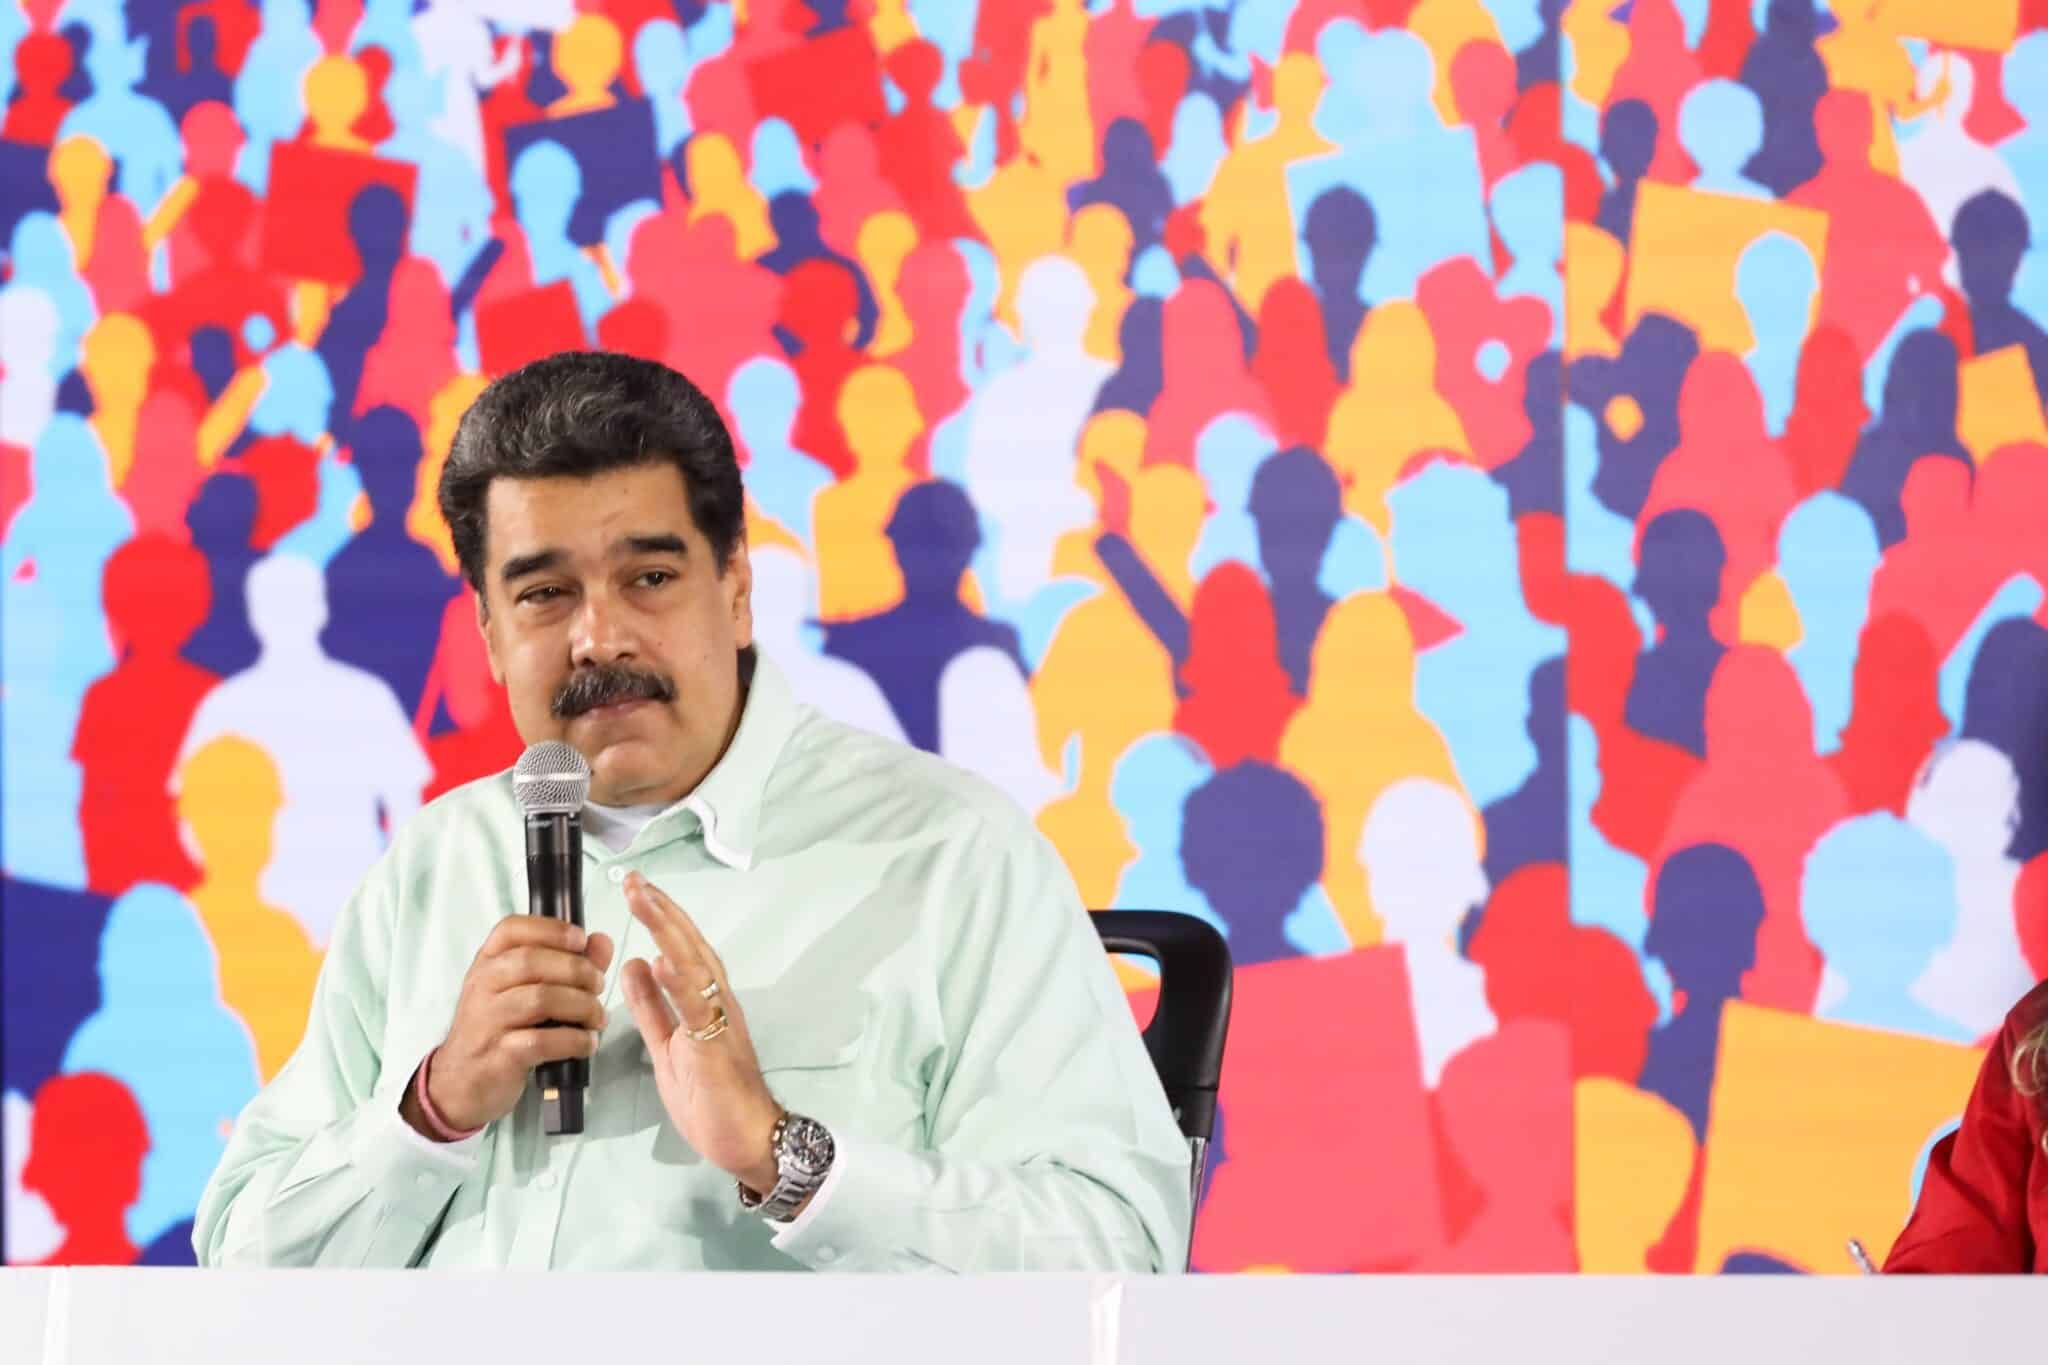 El líder chavista, Nicolás Maduro, en una reunión con dirigentes locales chavistas